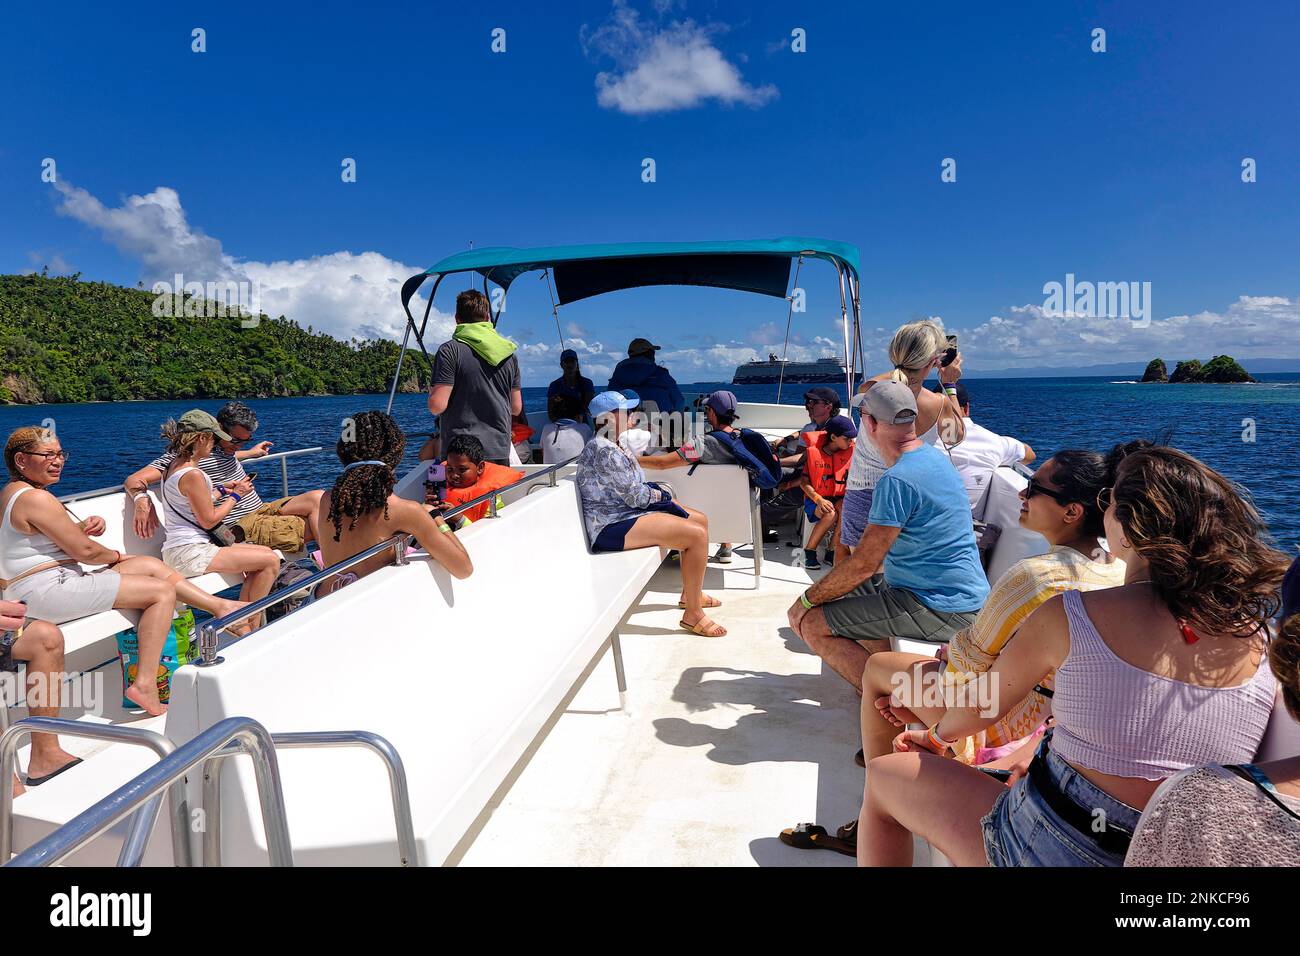 Touristes sur un bateau d'observation des baleines, Samana, Las Terrenas, République dominicaine, Caraïbes, Amérique centrale Banque D'Images